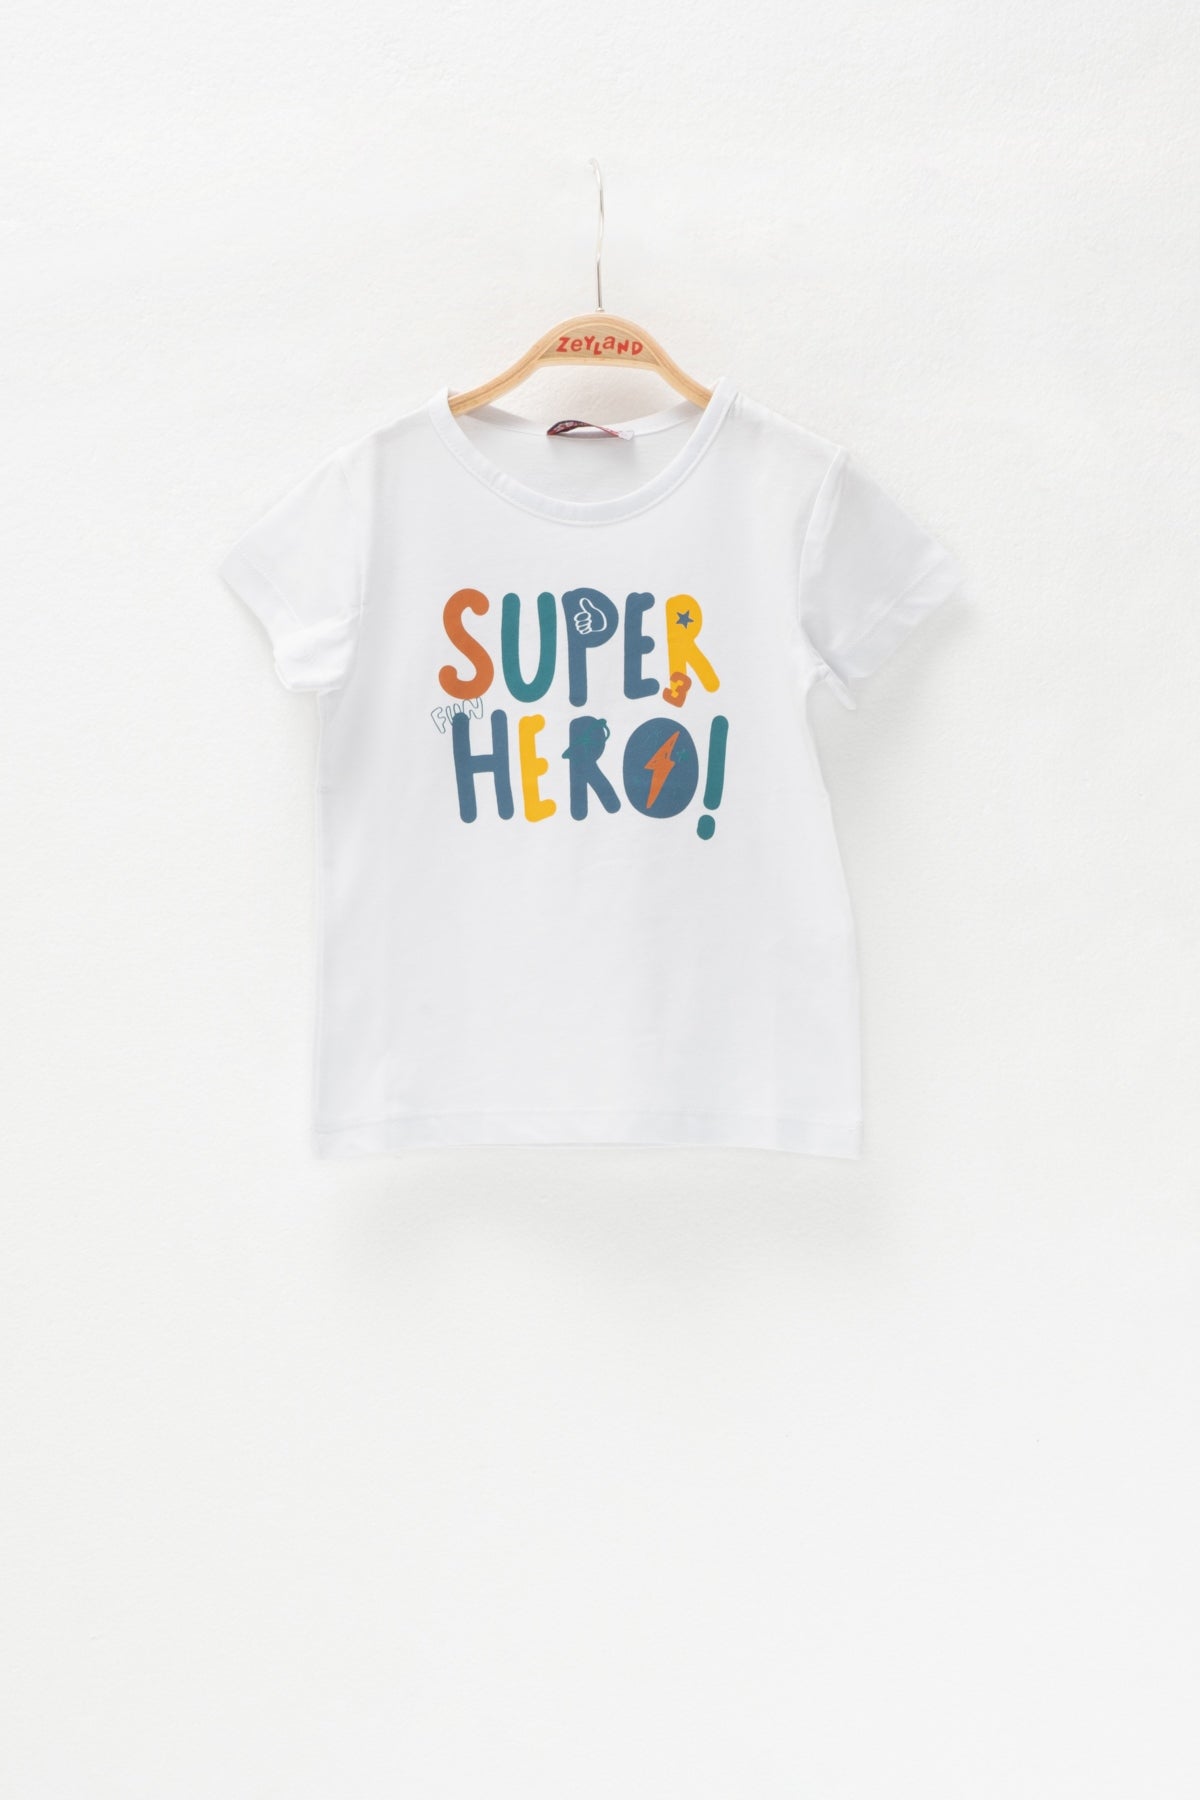 Erkek Bebek Super Fun Hero Beyaz T-Shirt (2-7yaş)-0